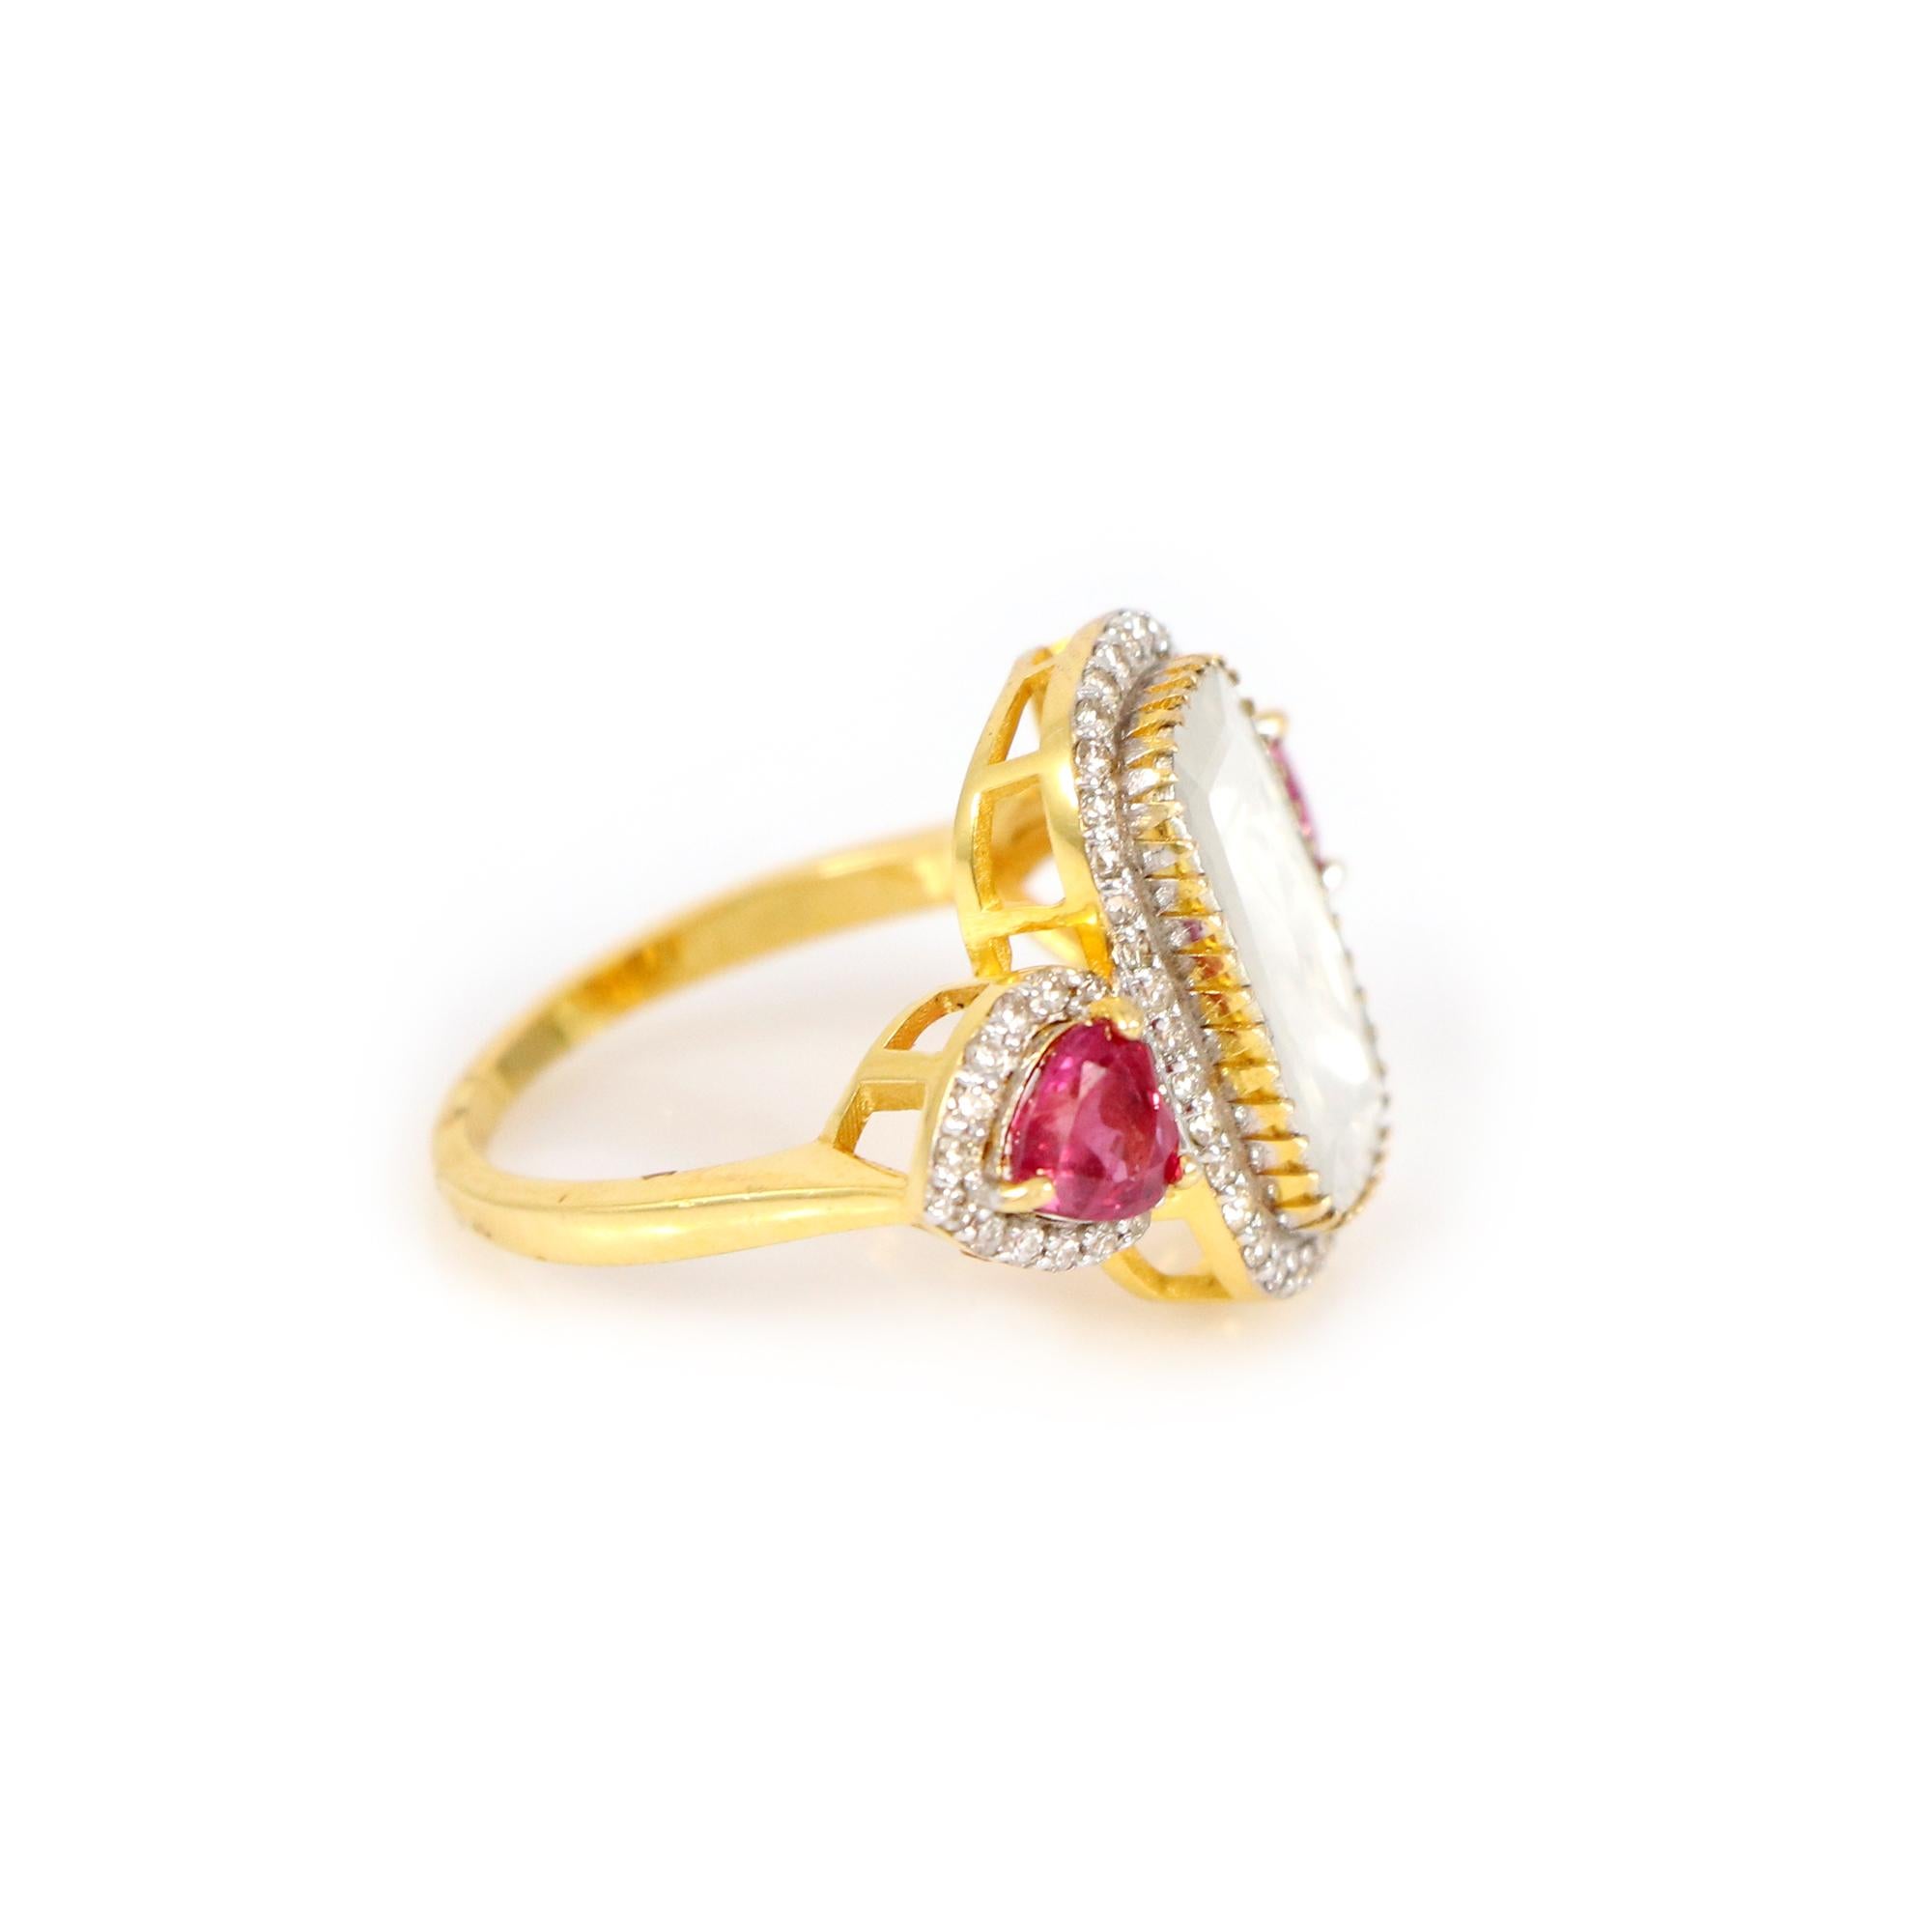 Découvrez un monde de beauté intemporelle grâce à notre bague classique en or jaune 18 carats, un véritable chef-d'œuvre orné de diamants taille rose, de diamants brillants et d'un rubis en forme de cœur. Ce charmant rubis en forme de cœur symbolise